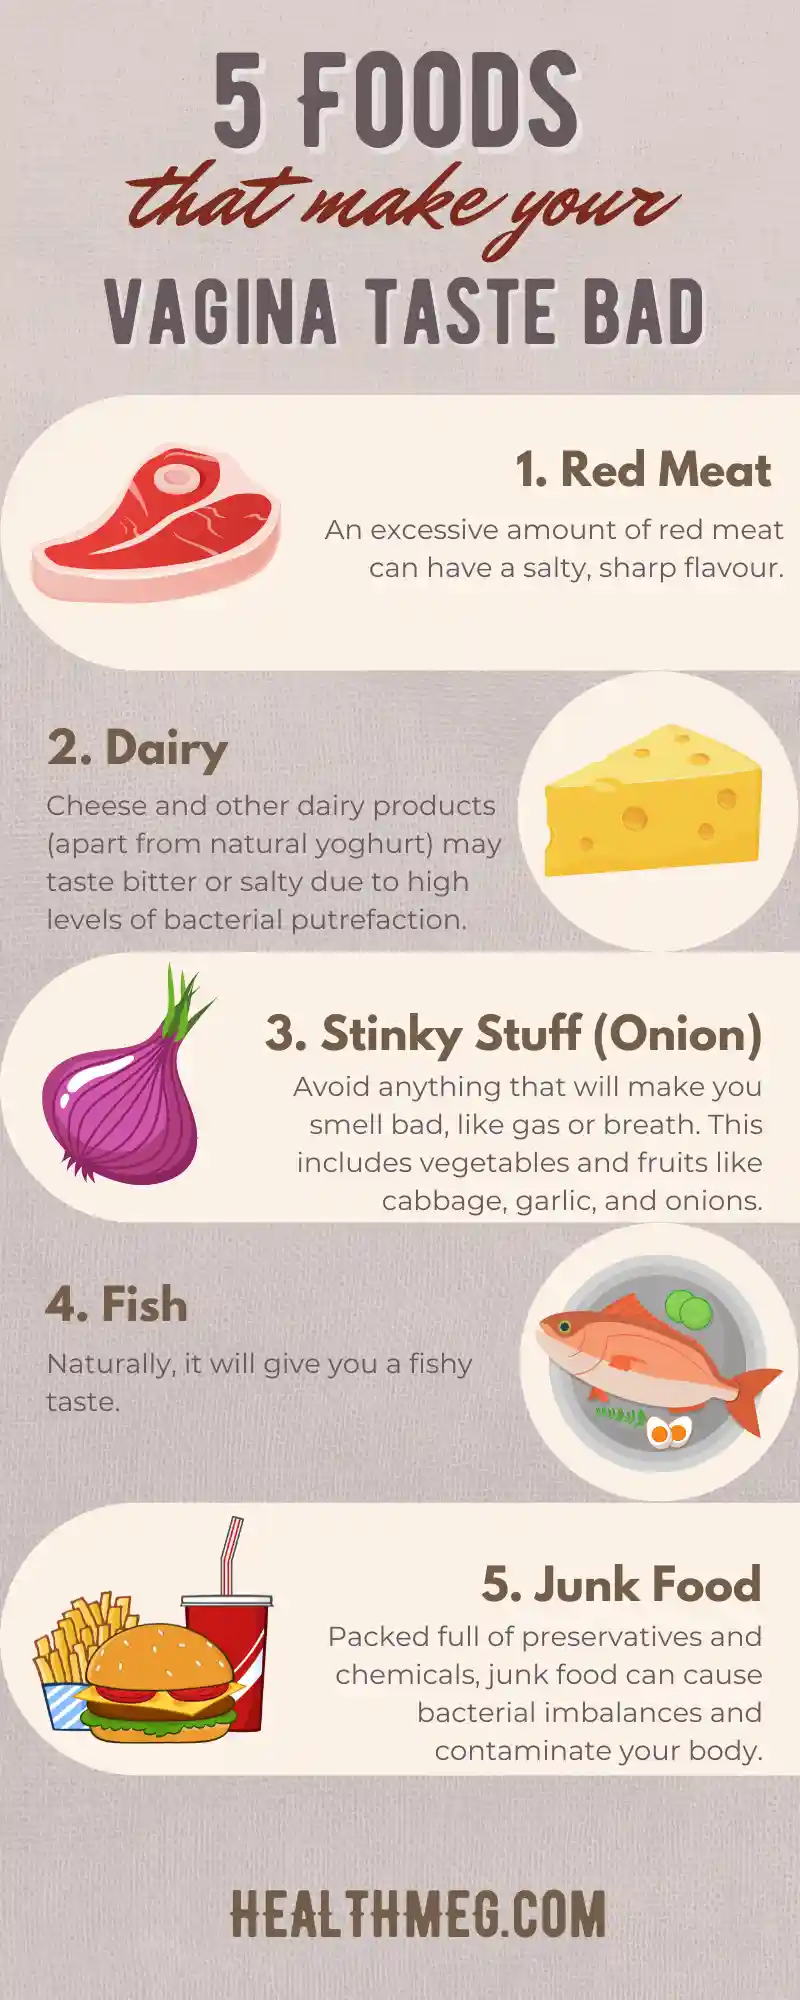 5 Foods that make your vagina taste bad